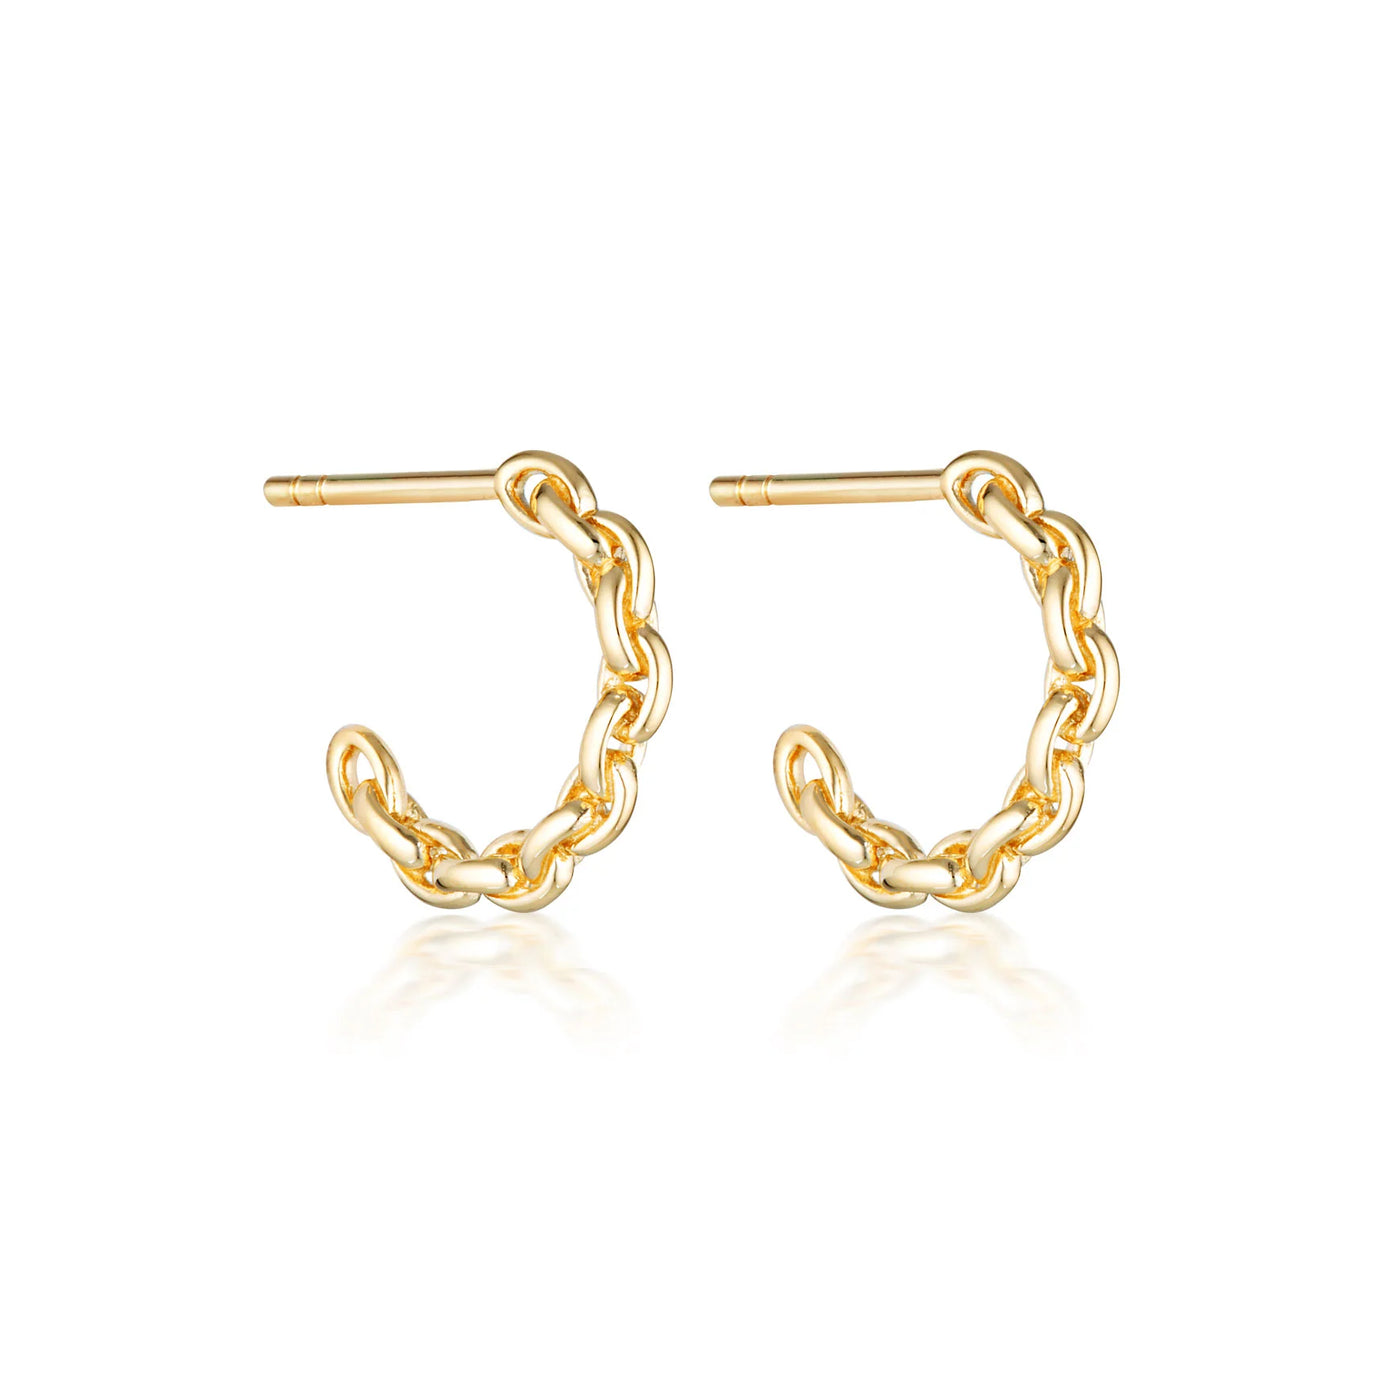 Linda Tahija Chain Hoop Earrings, Gold or Silver